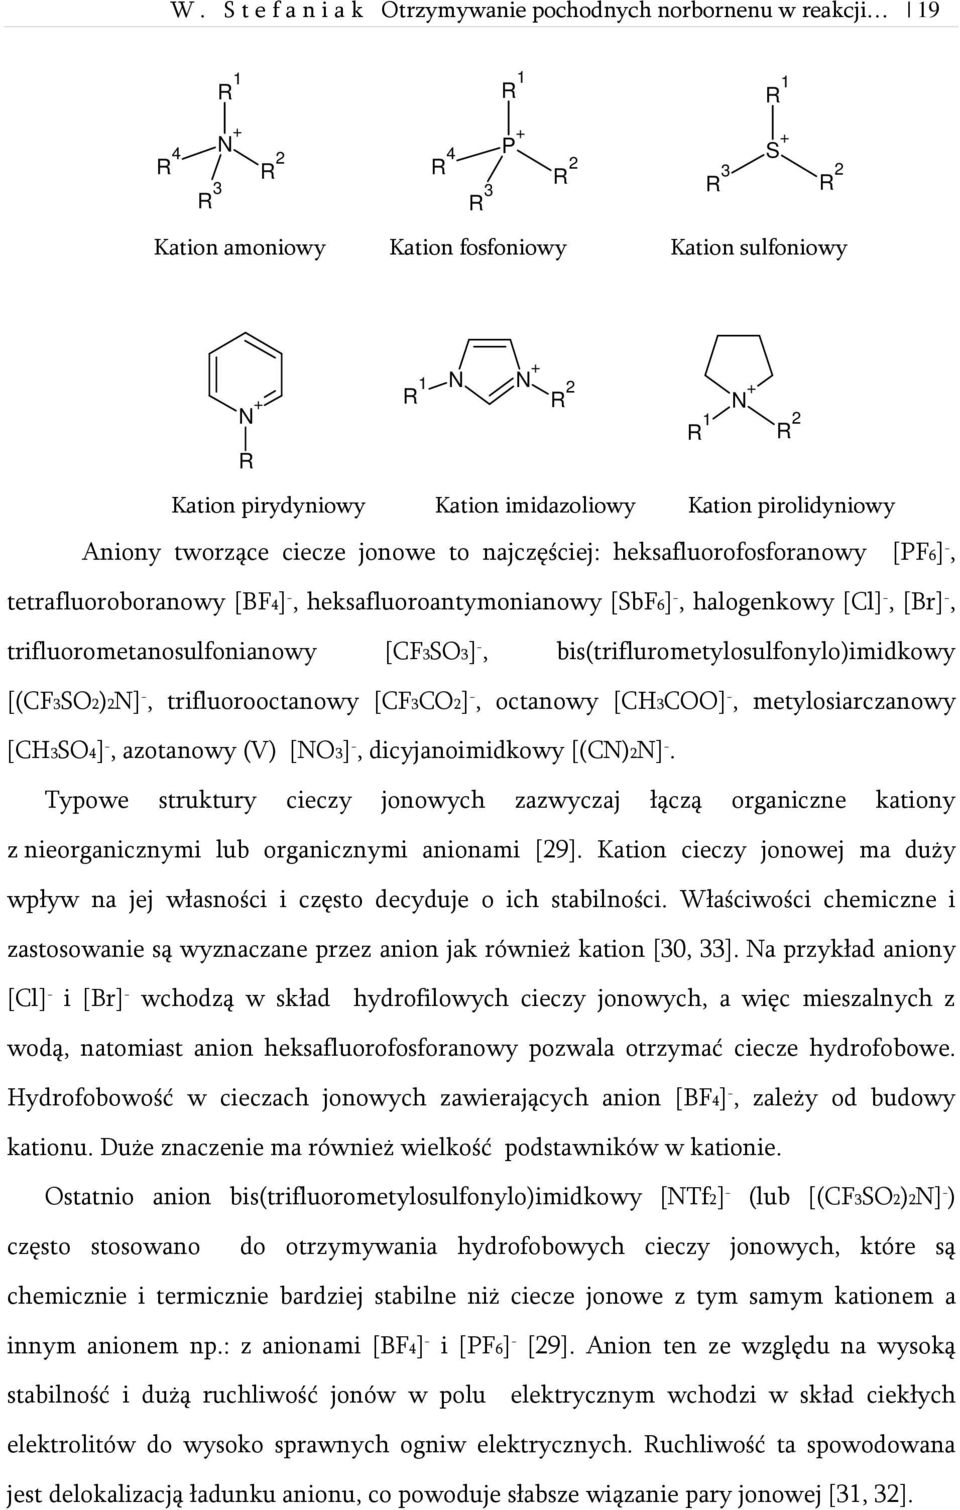 heksafluoroantymonianowy [SbF6] -, halogenkowy [Cl] -, [Br] -, trifluorometanosulfonianowy [CF3SO3] -, bis(triflurometylosulfonylo)imidkowy [(CF3SO2)2N] -, trifluorooctanowy [CF3CO2] -, octanowy